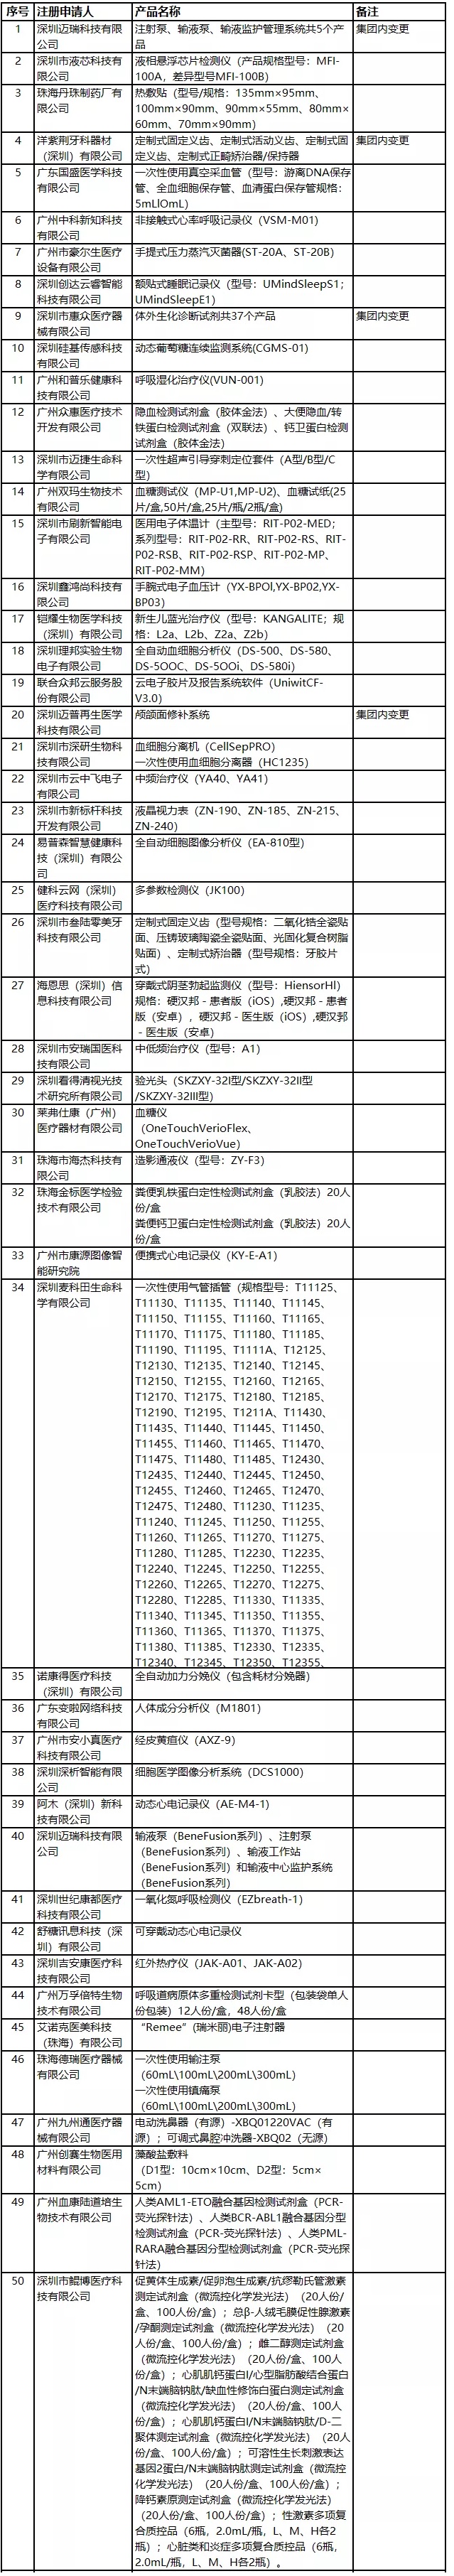 2020年广东医疗器械注册人试点品种及试点企业清单(图2)